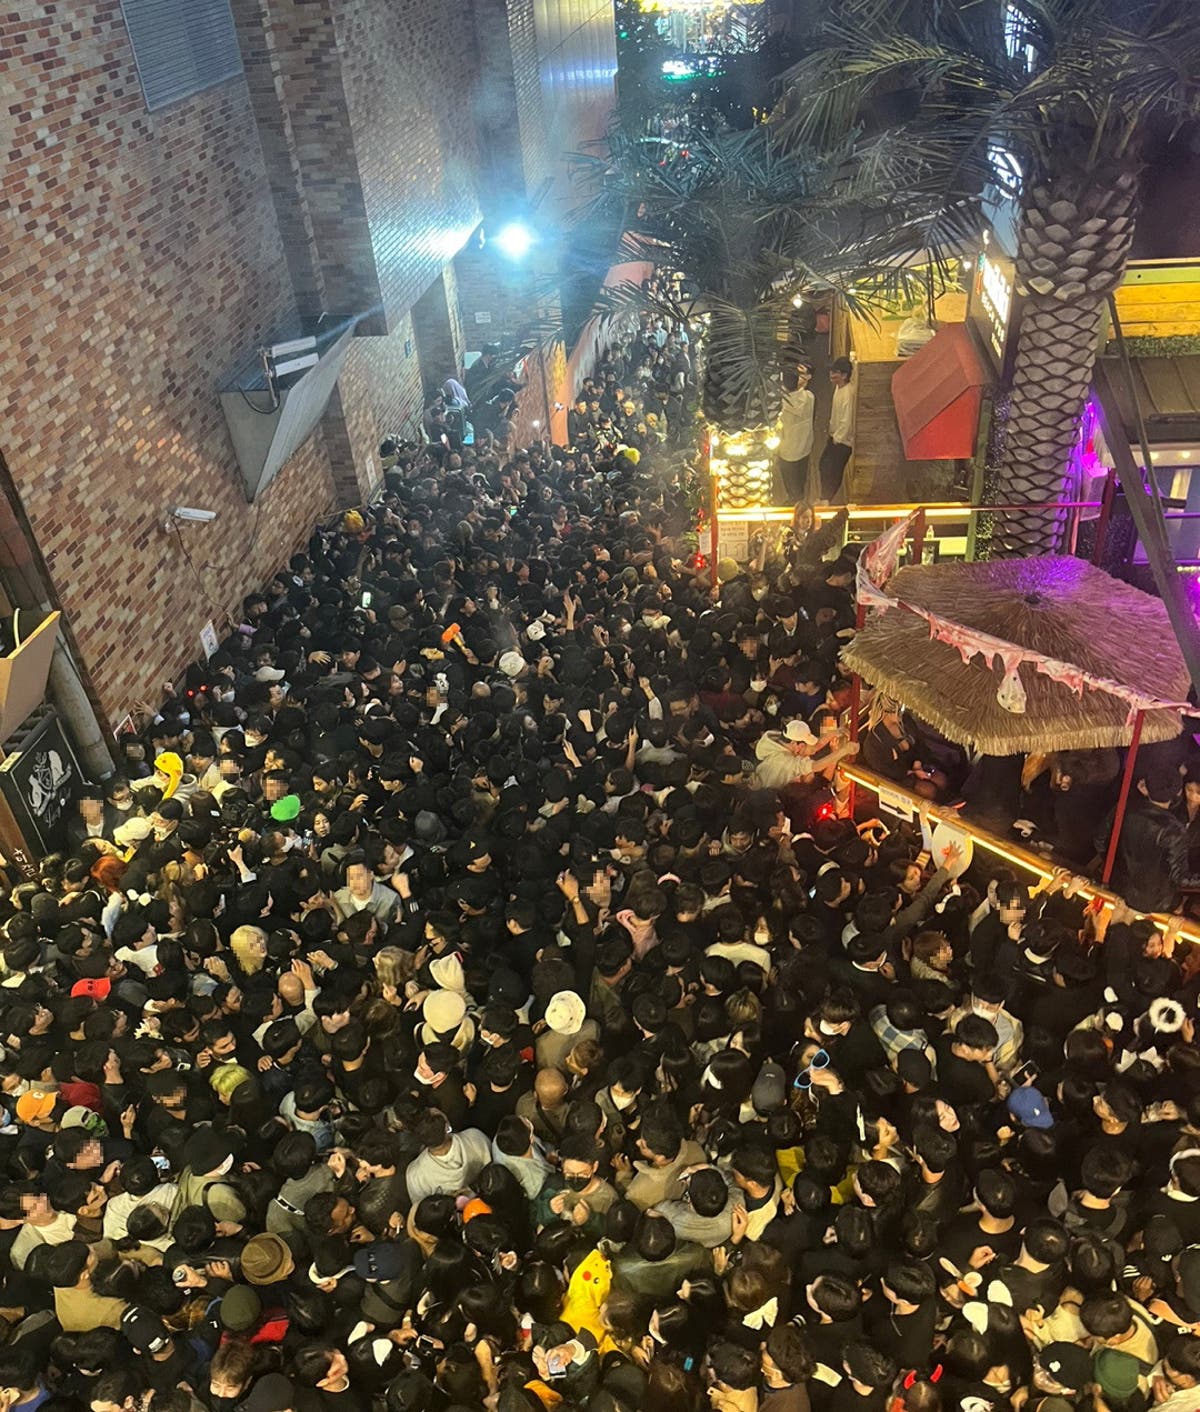 Itaewon crowd crush